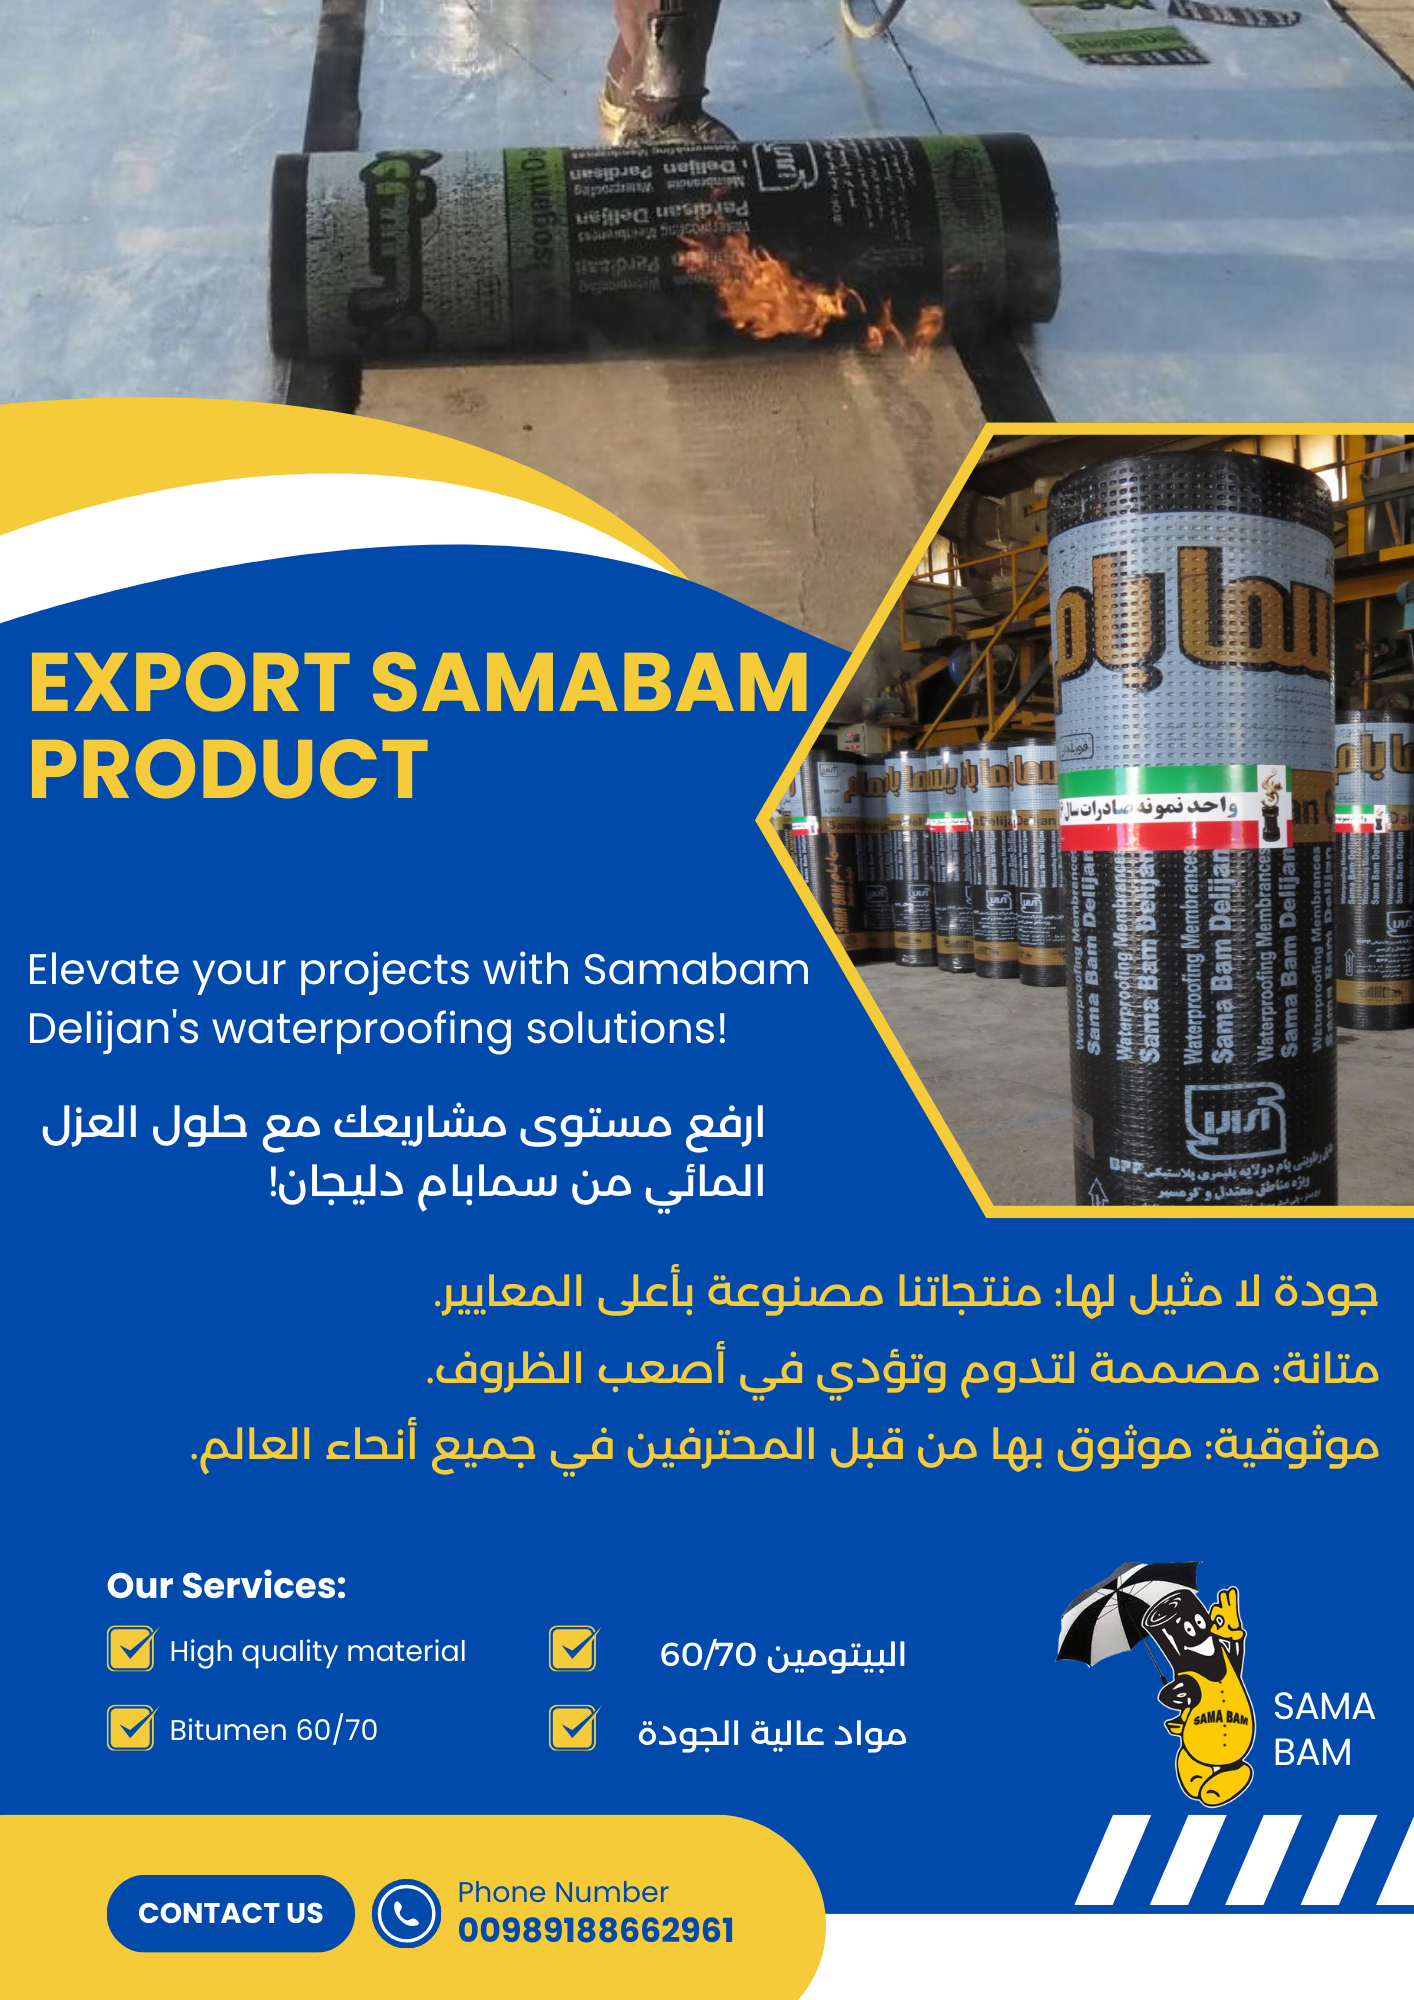 محصولات صادراتی ایزوگام سمابام | کیفیت و دوام برتر